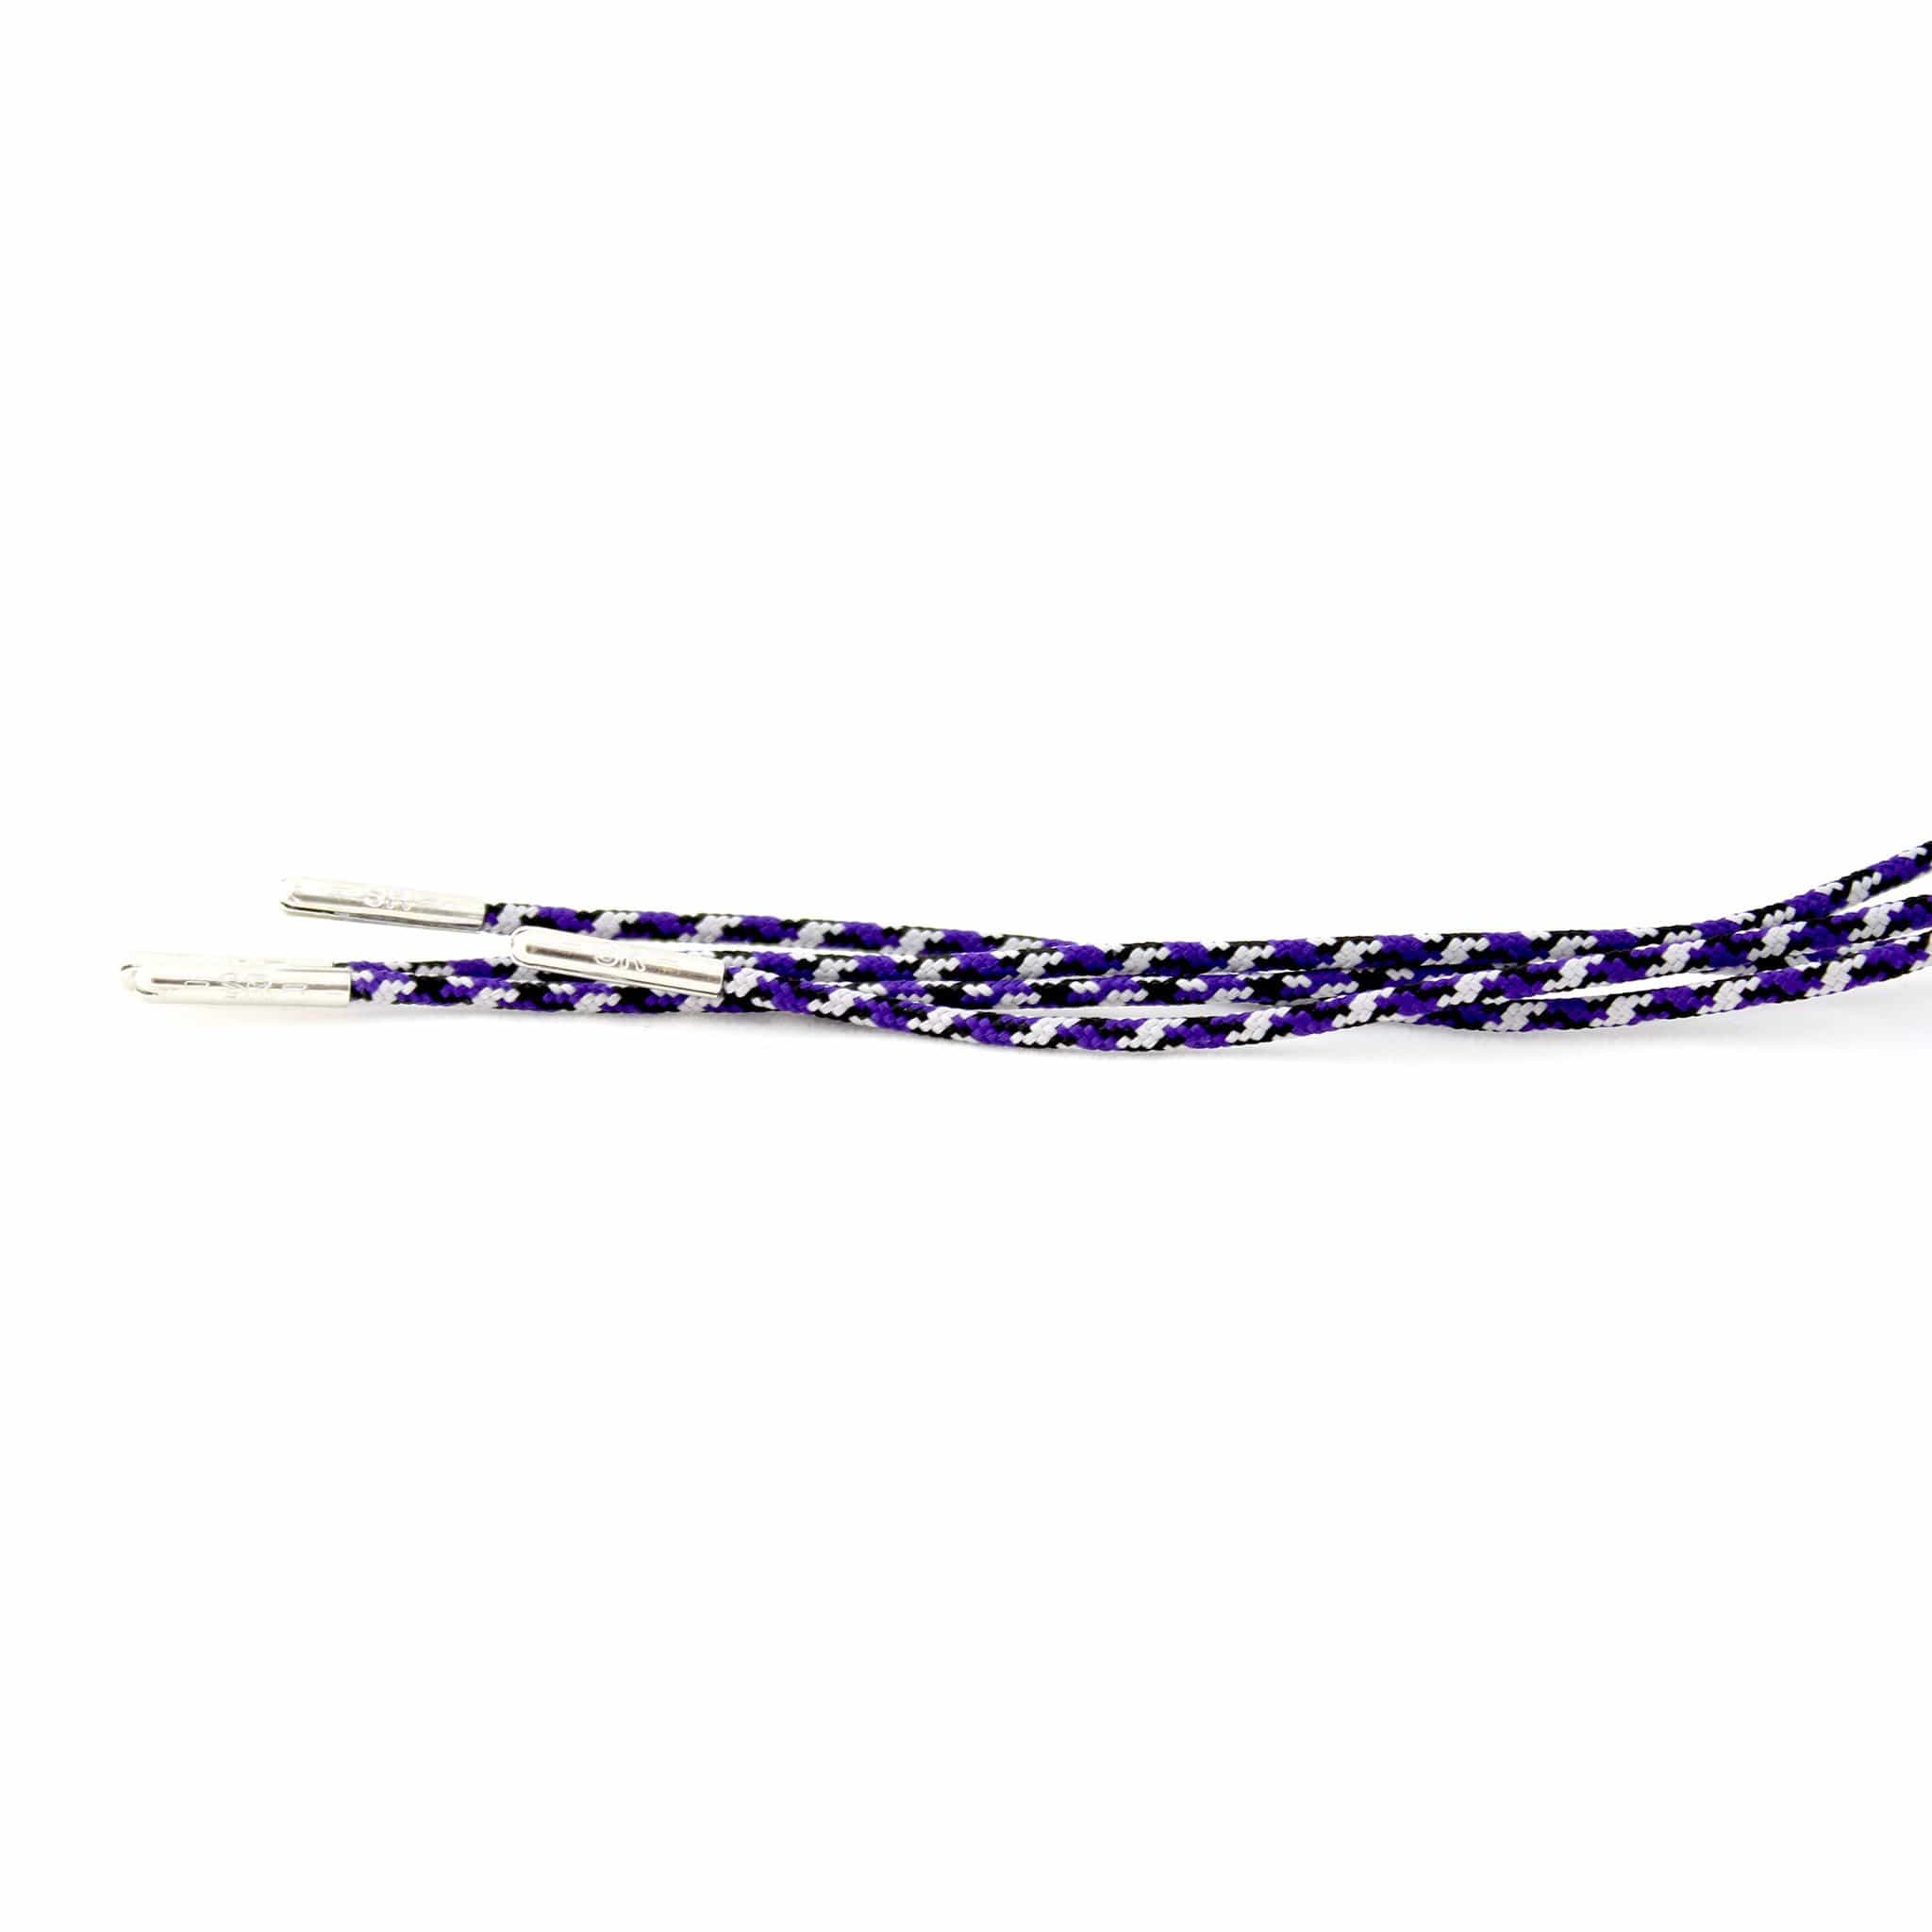 Camo Purple (Length: 32"/81cm) - Stolen Riches